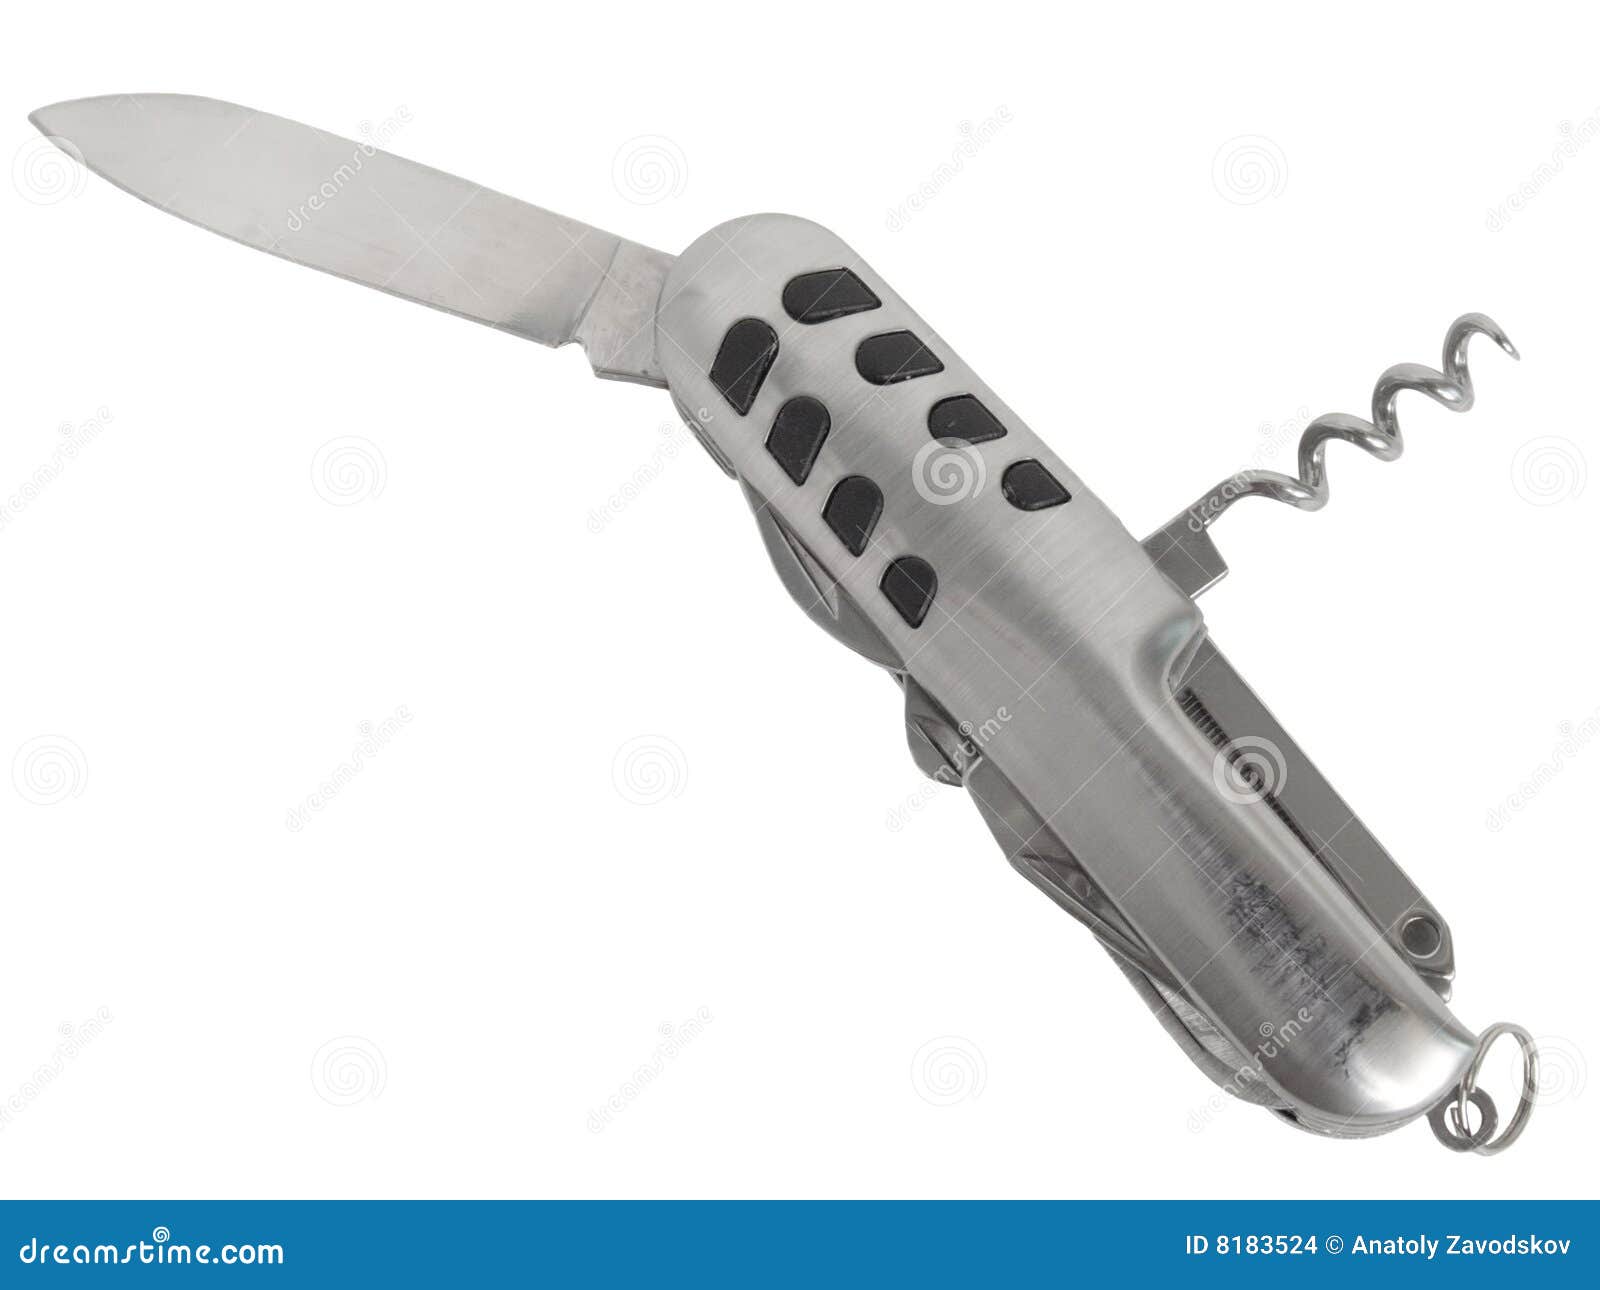 multitool penknife